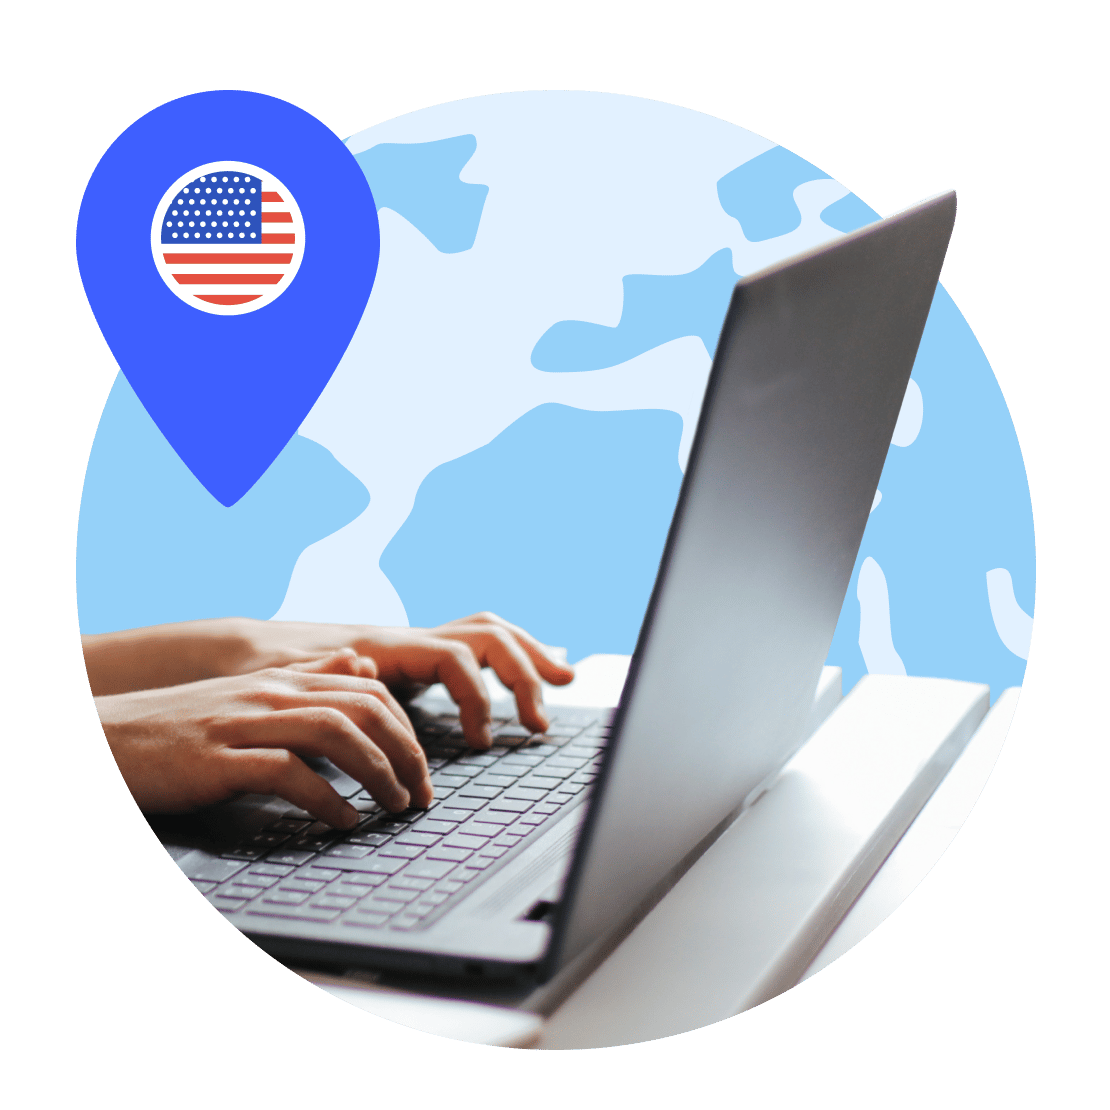 连接到美国 VPN 服务器以保护其设备的人。